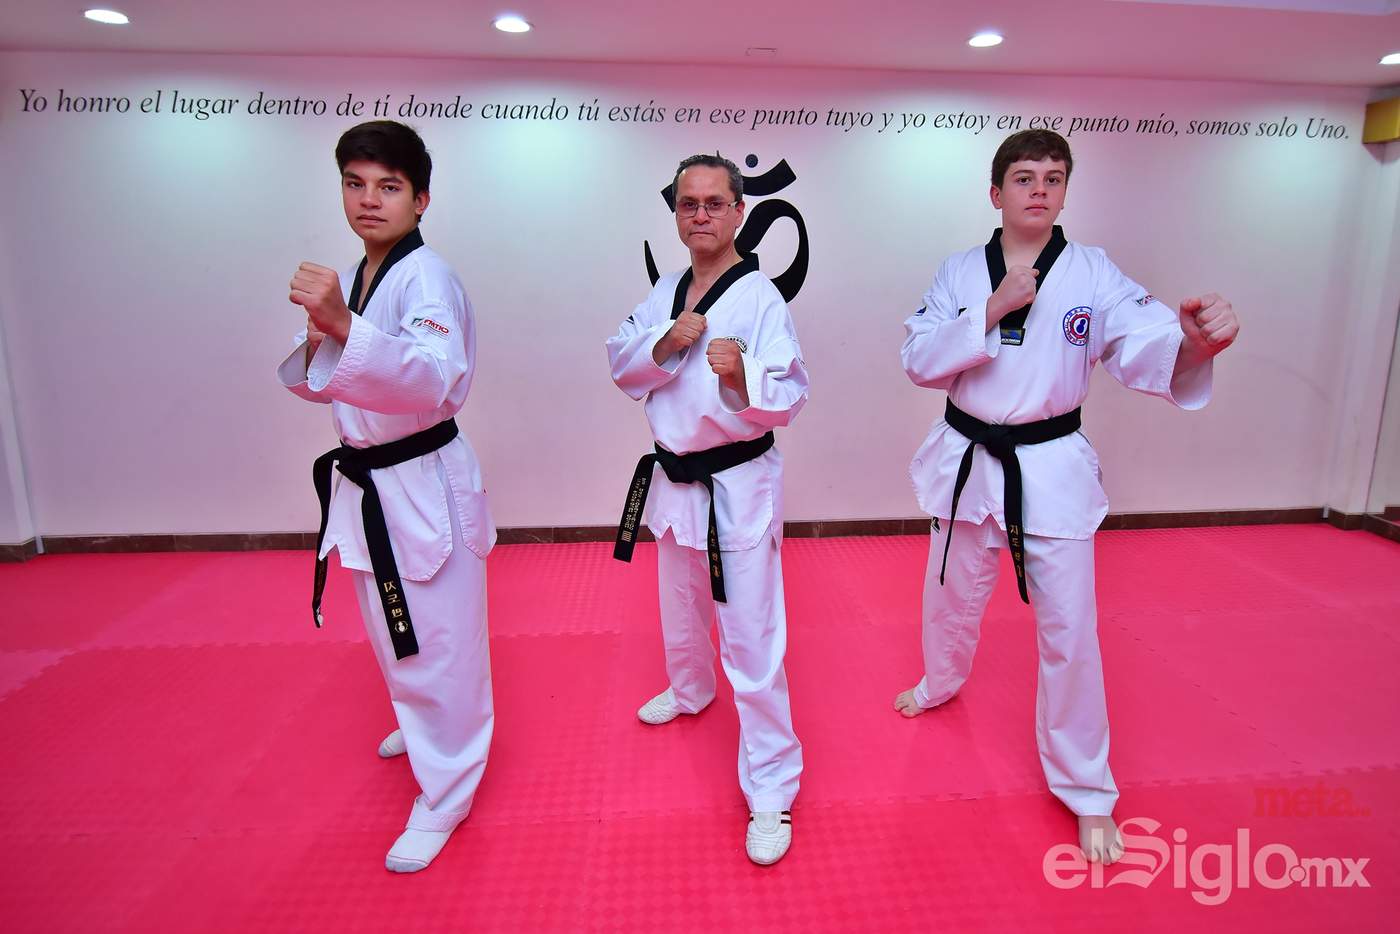 Diego y David Alberto Pérez Sánchez han aprendido bajo la dirección del profesor Iván Rodríguez Gómez, en la academia Ji Do Kwan del Parque España, donde cada tarde se practica el tae kwon do.